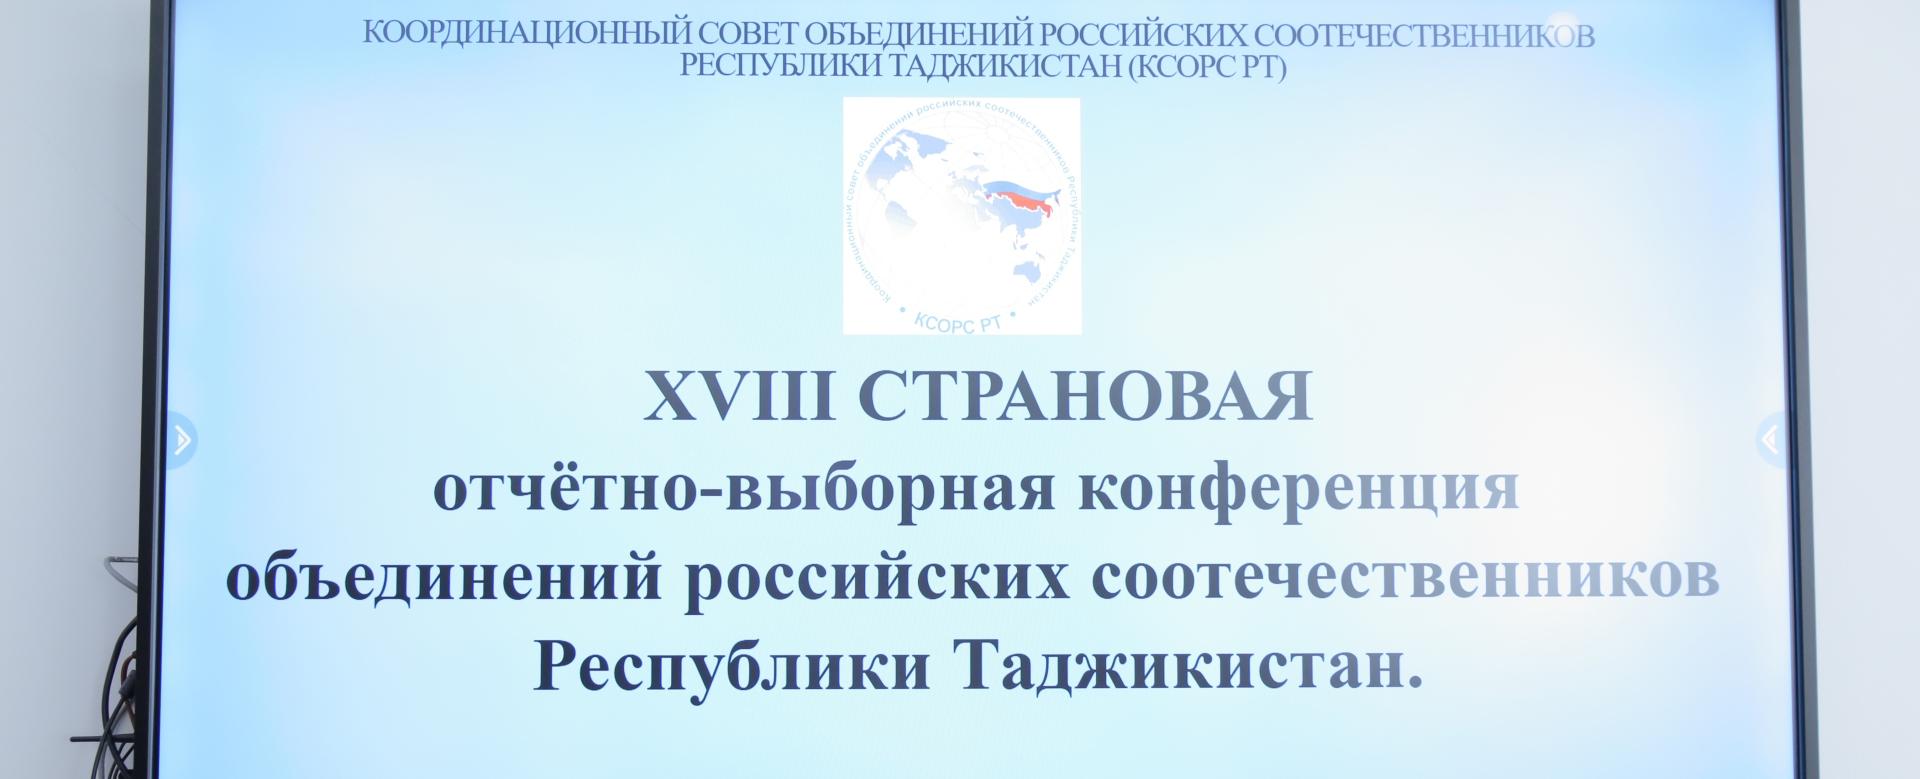 В РТСУ прошла XVIII Страновая отчетно-выборная конференция объединений российских соотечественников Таджикистана